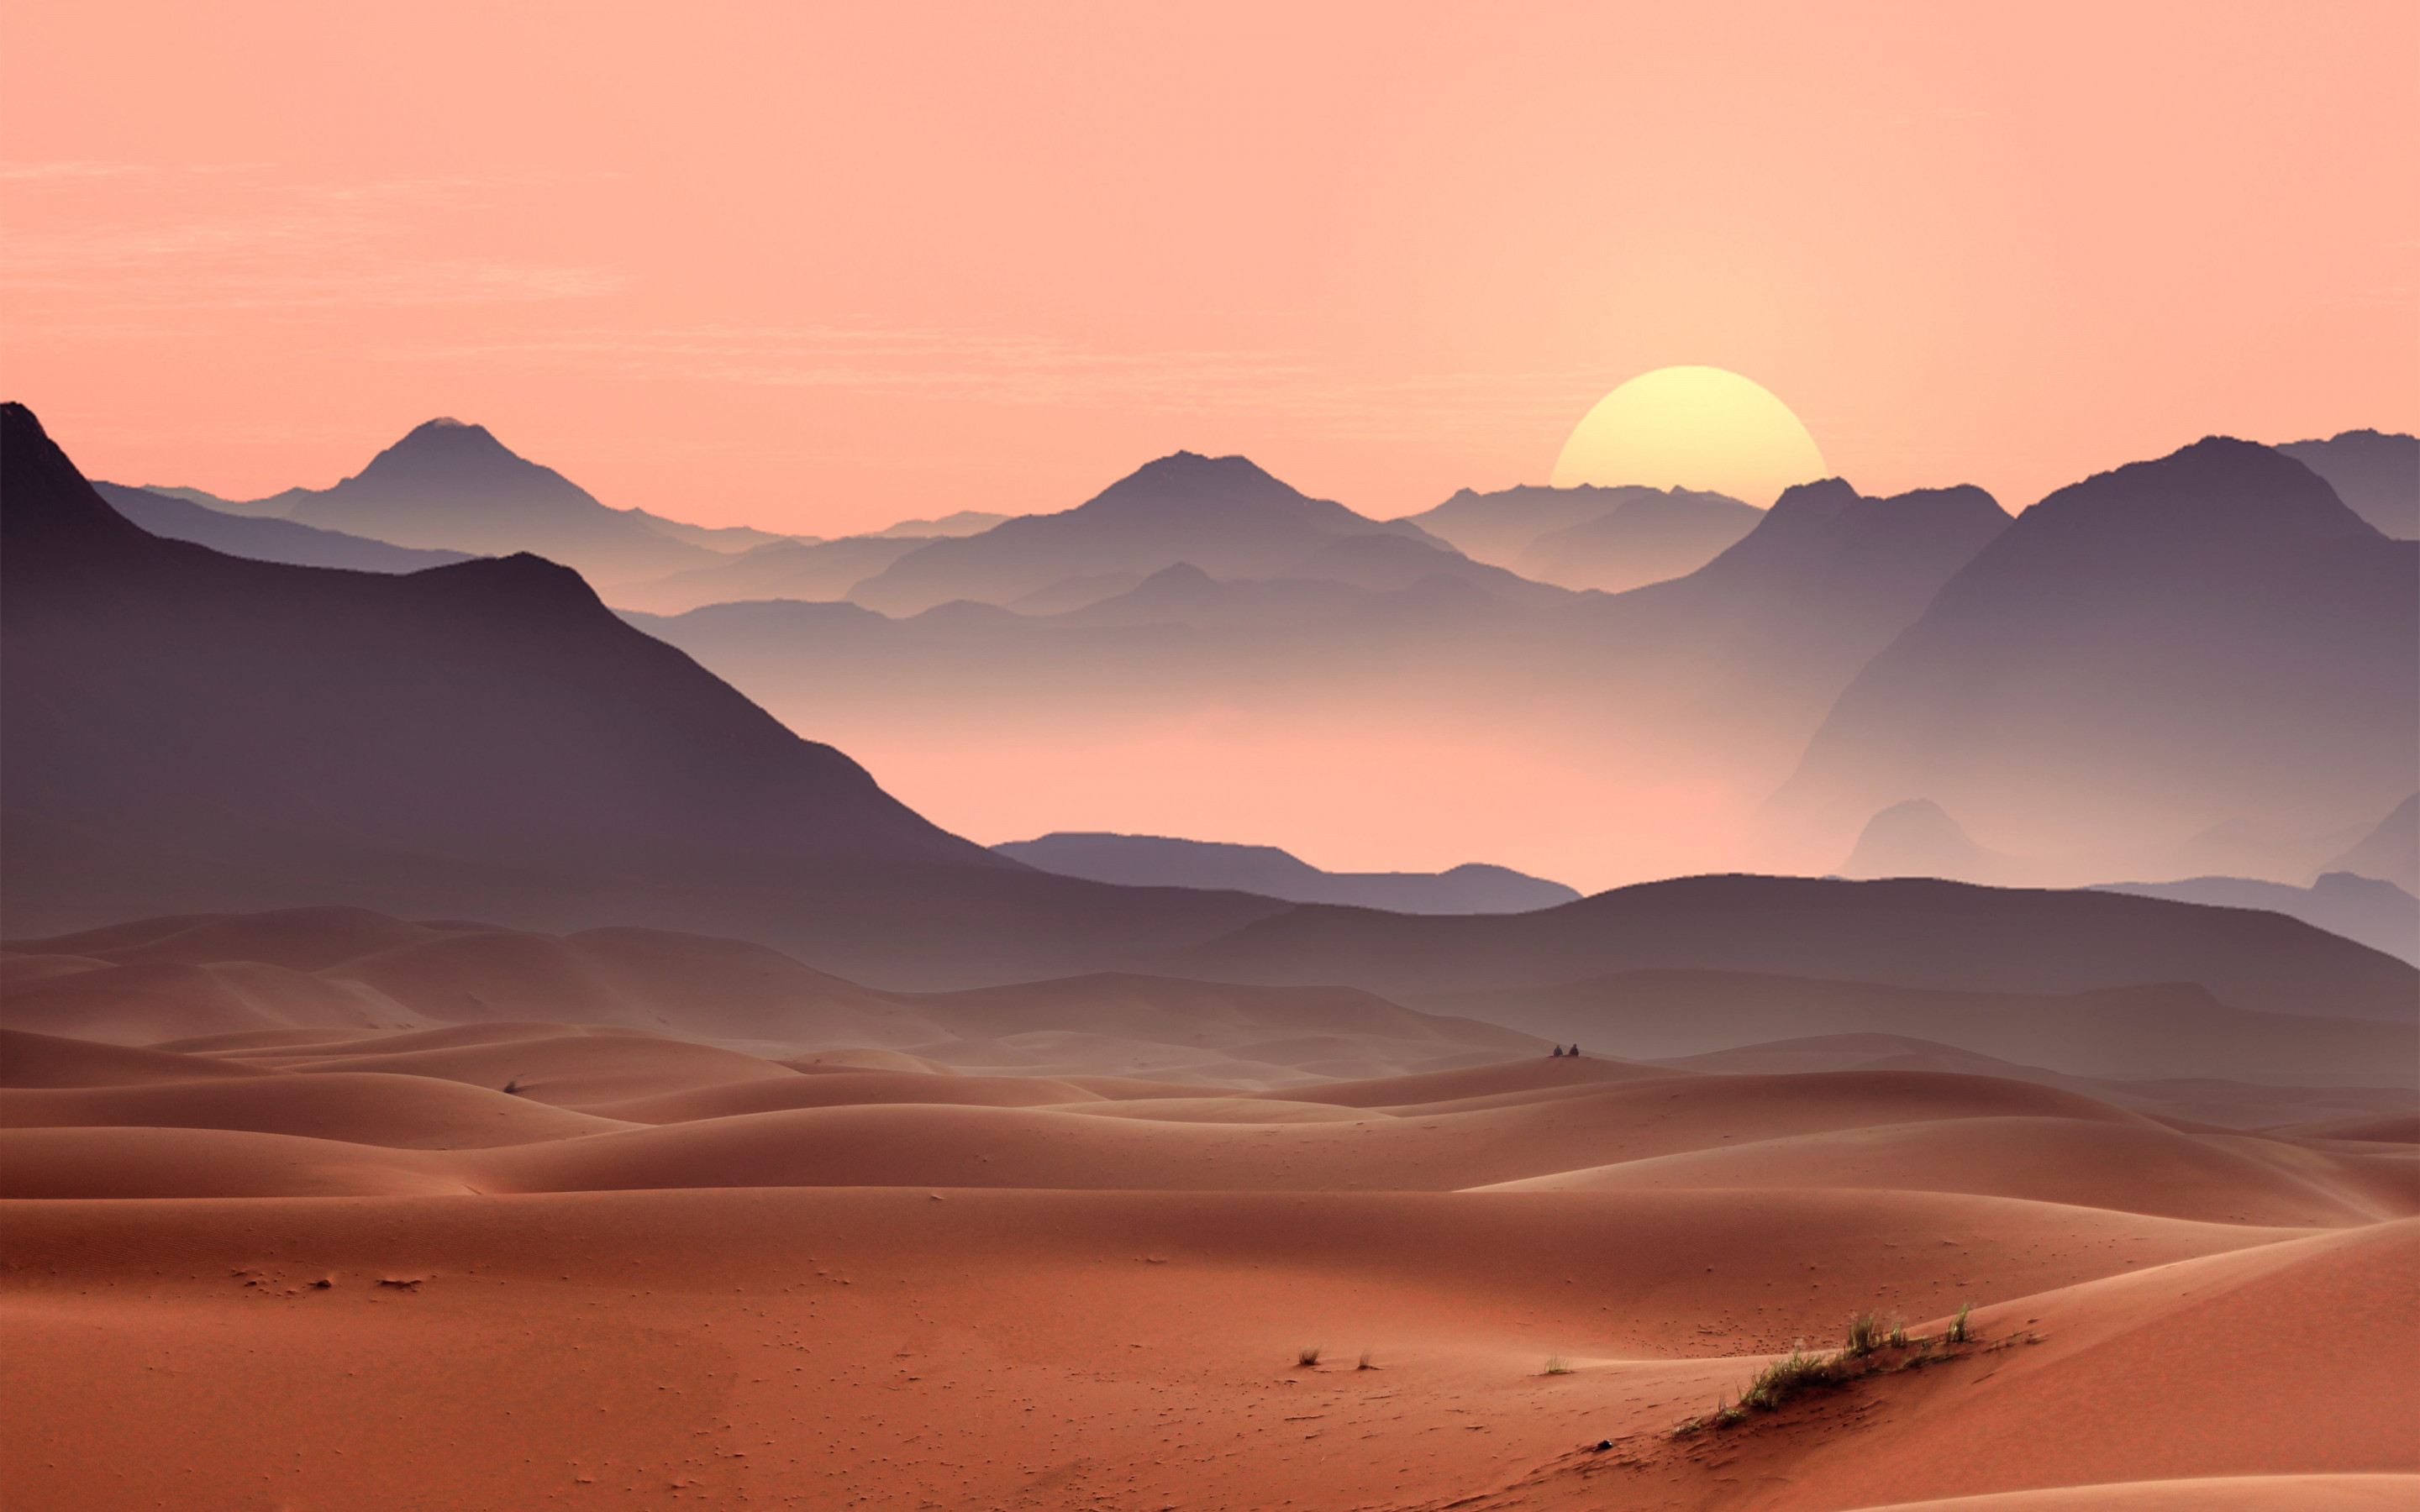 Sunset on the desert dunes wallpaper 2880x1800